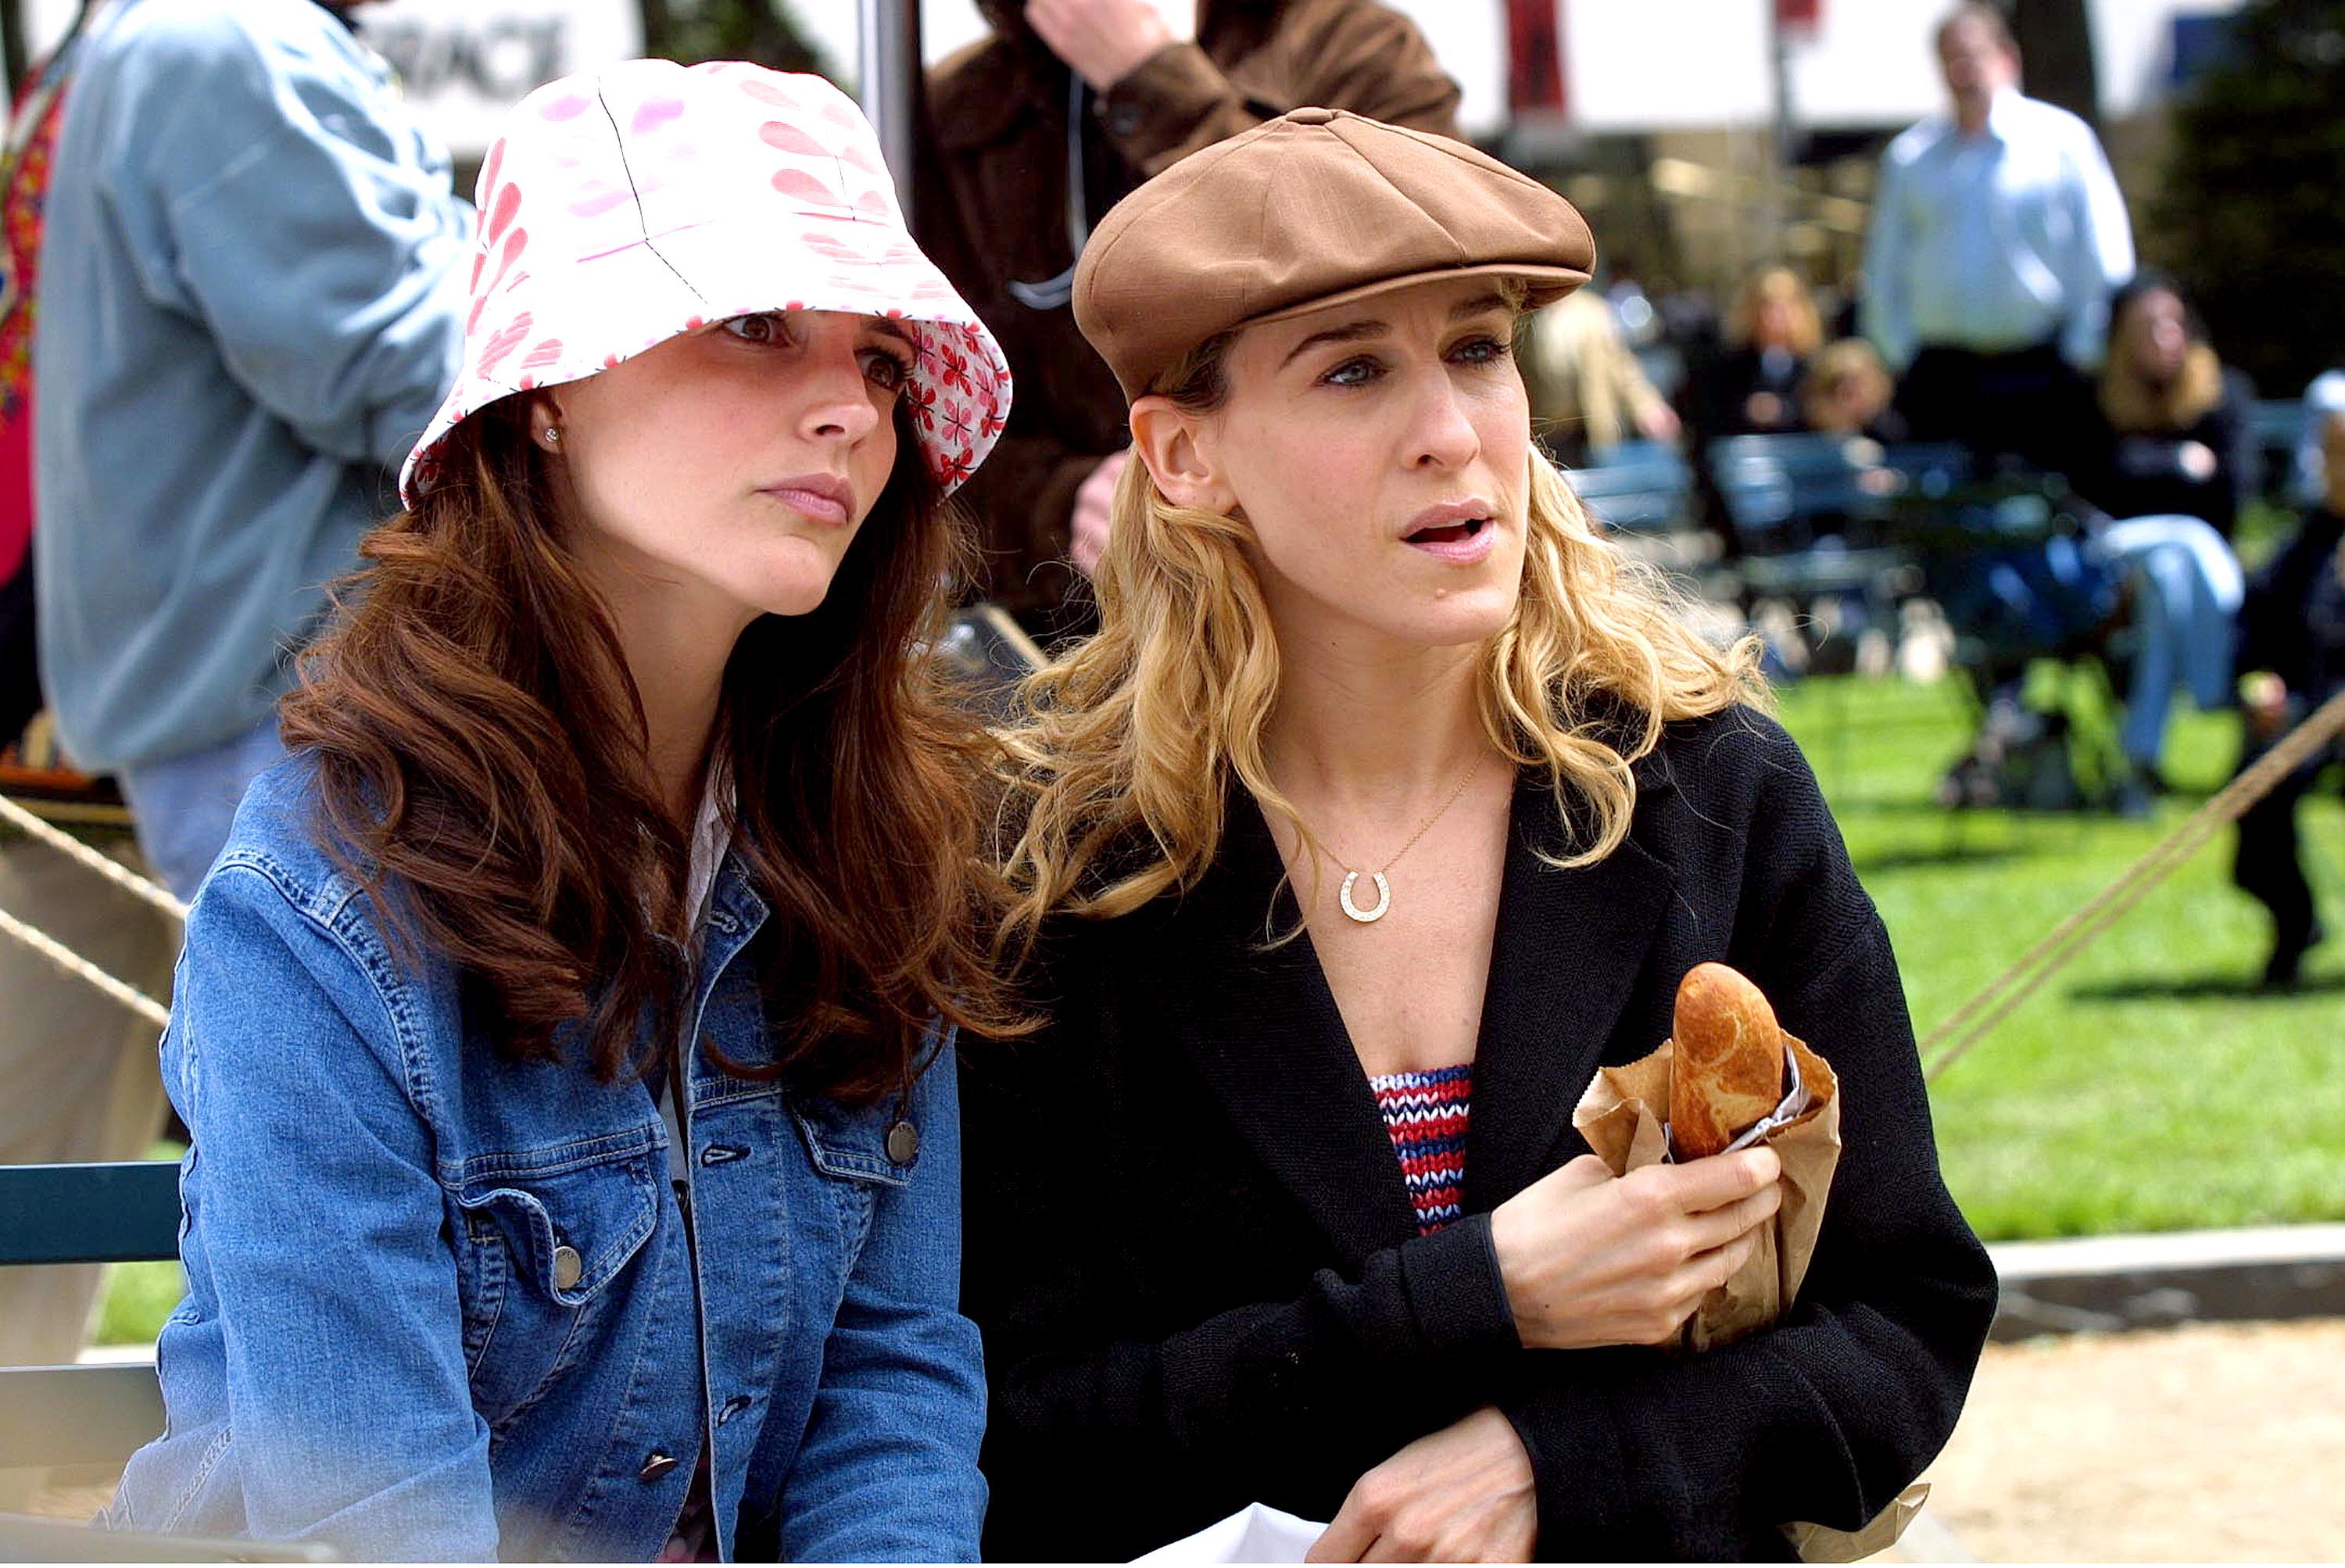 Kristin Davis et Sarah Jessica Parker vues sur le lieu de tournage de "Sex and the City" à Central Park le 8 mai 2001 à New York. | Source : Getty Images